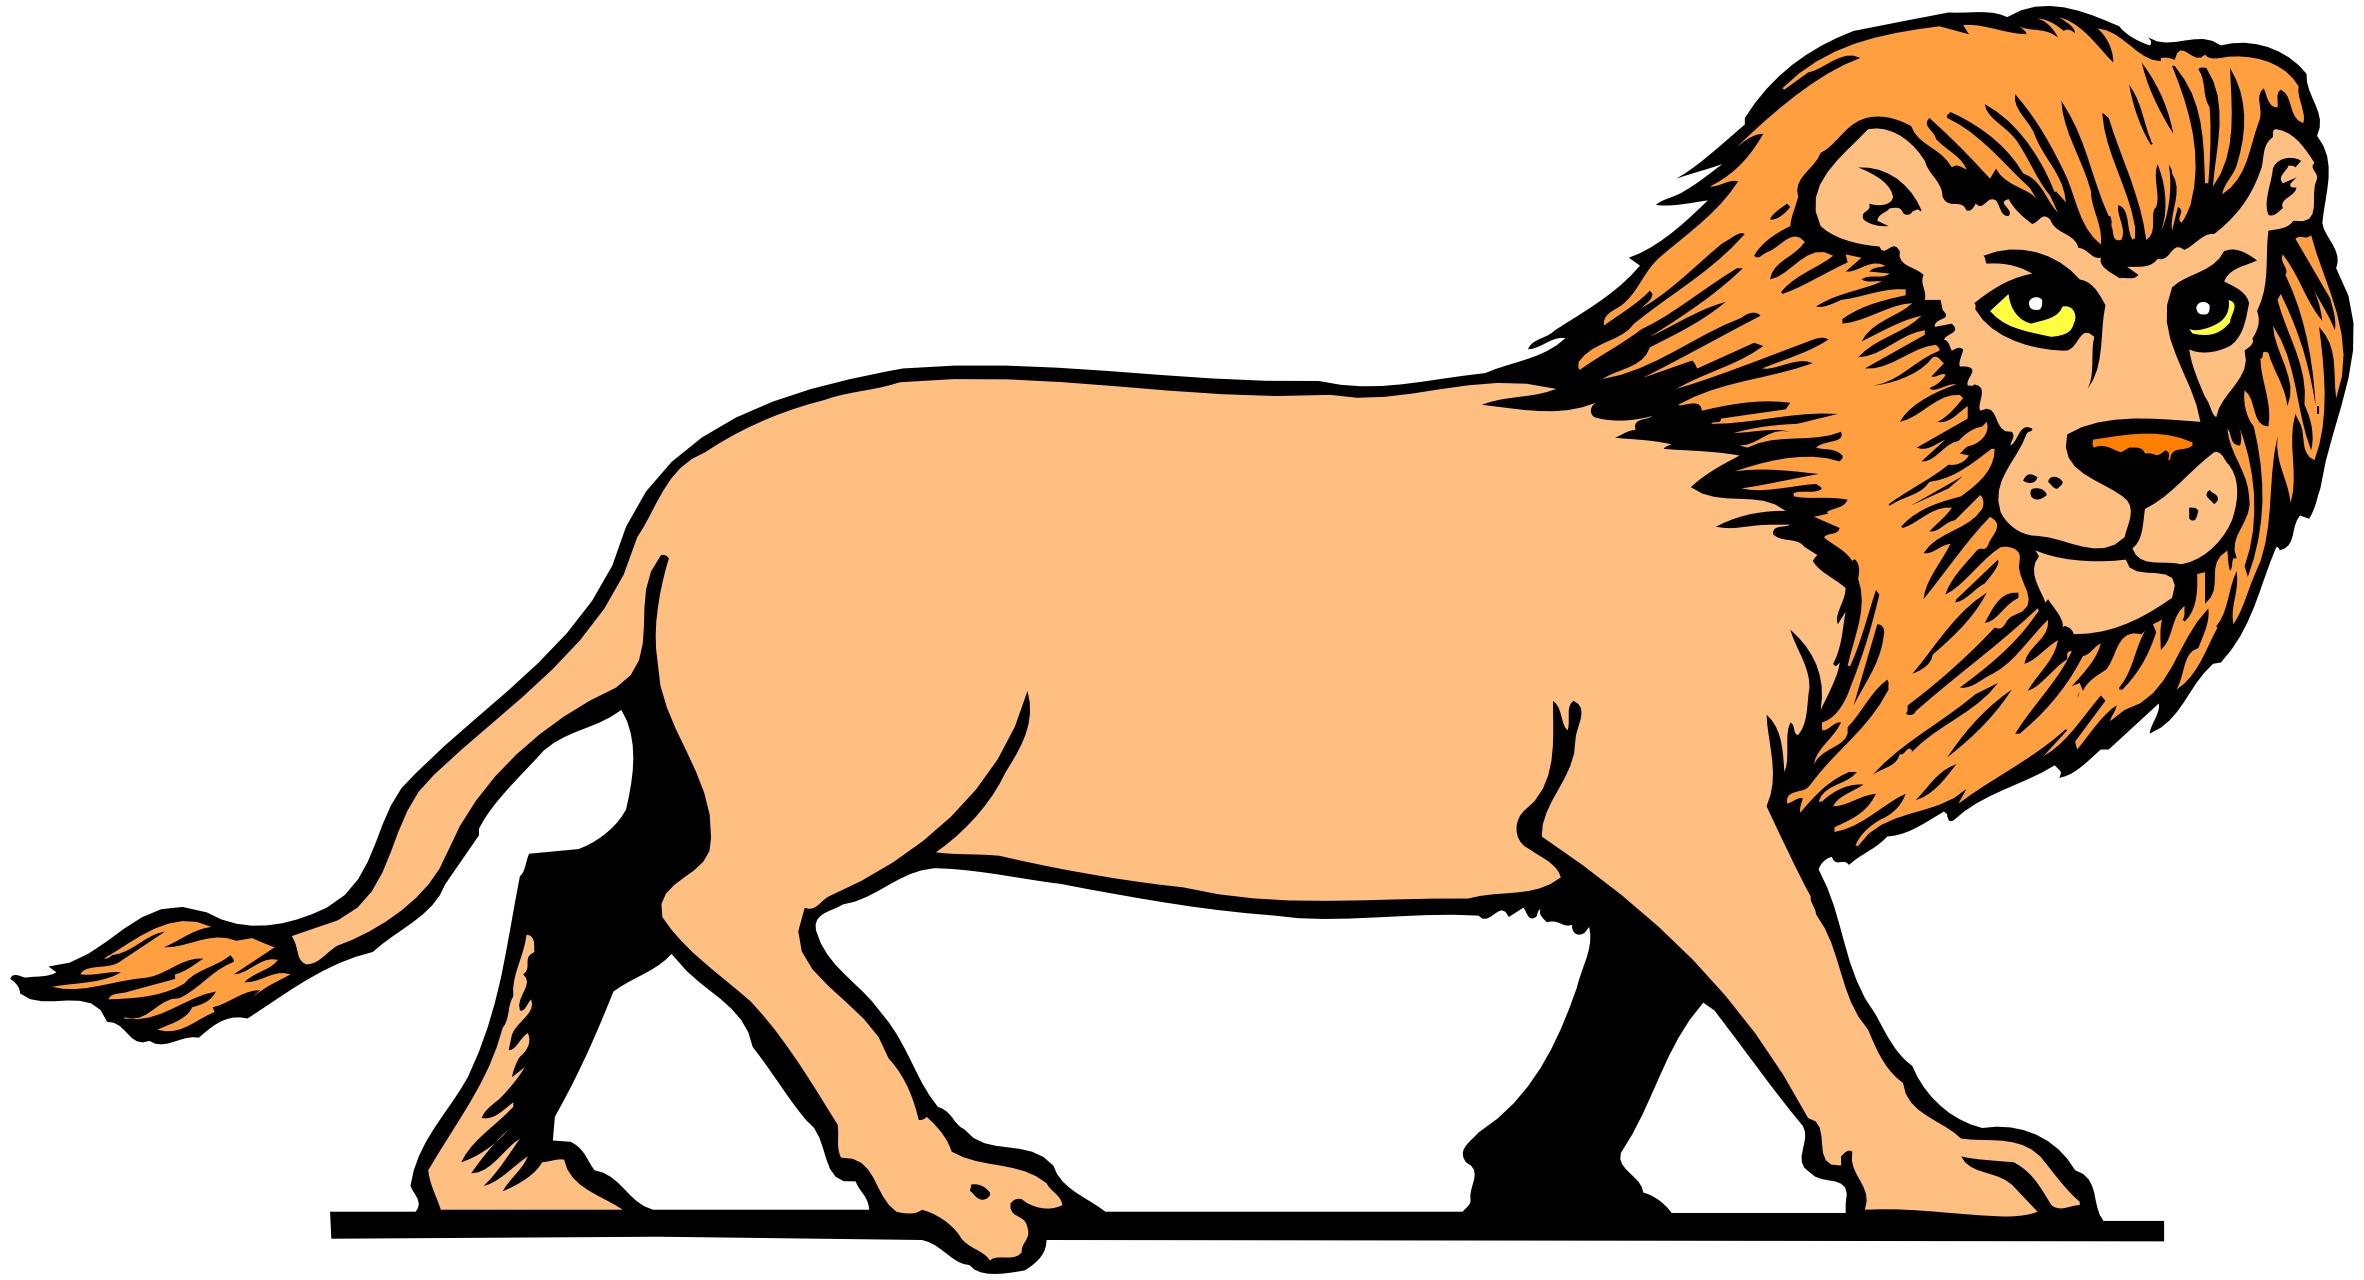 Cartoon orange Lion drawing free image download